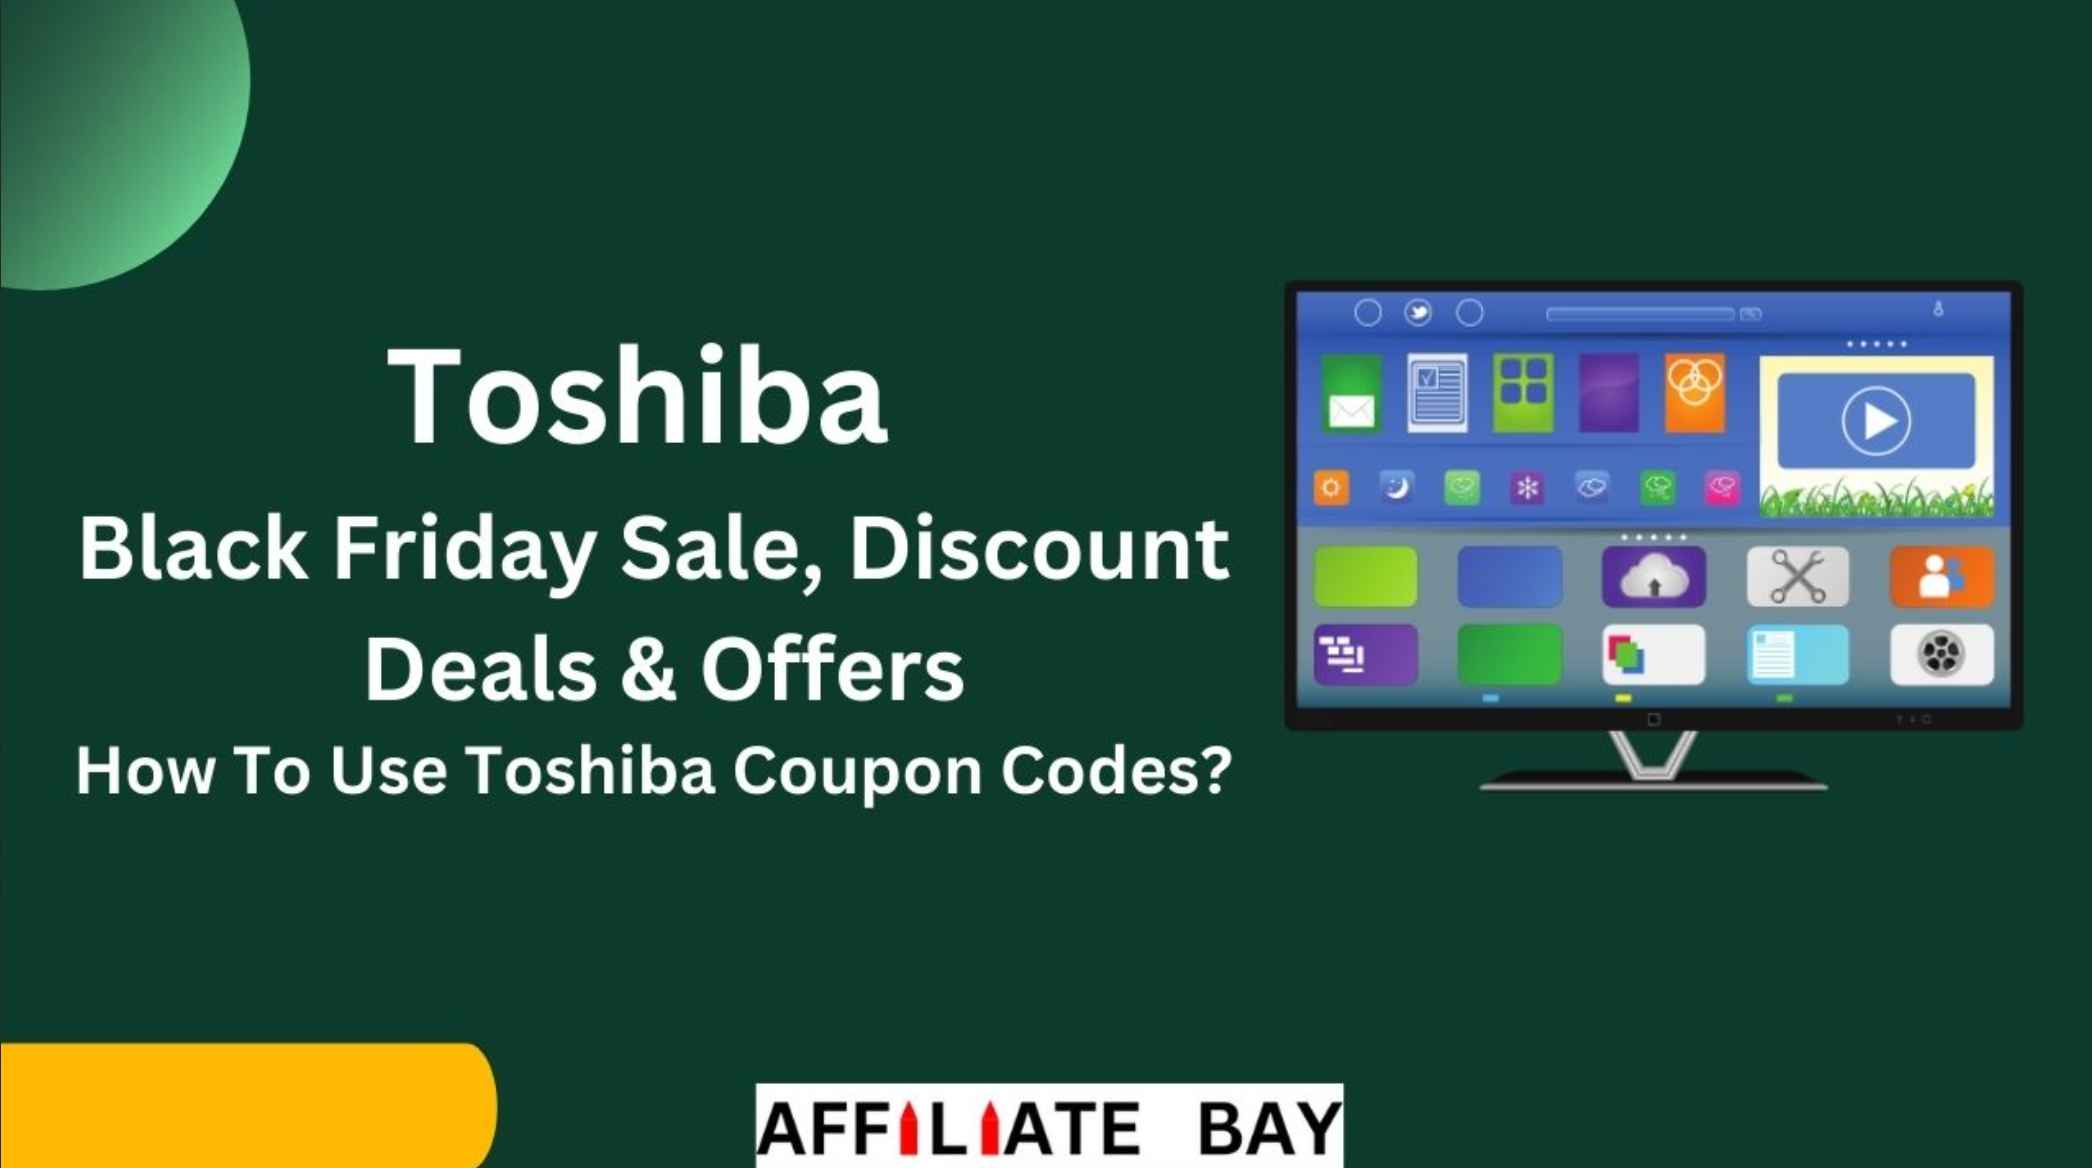 Toshiba Black Friday Deals